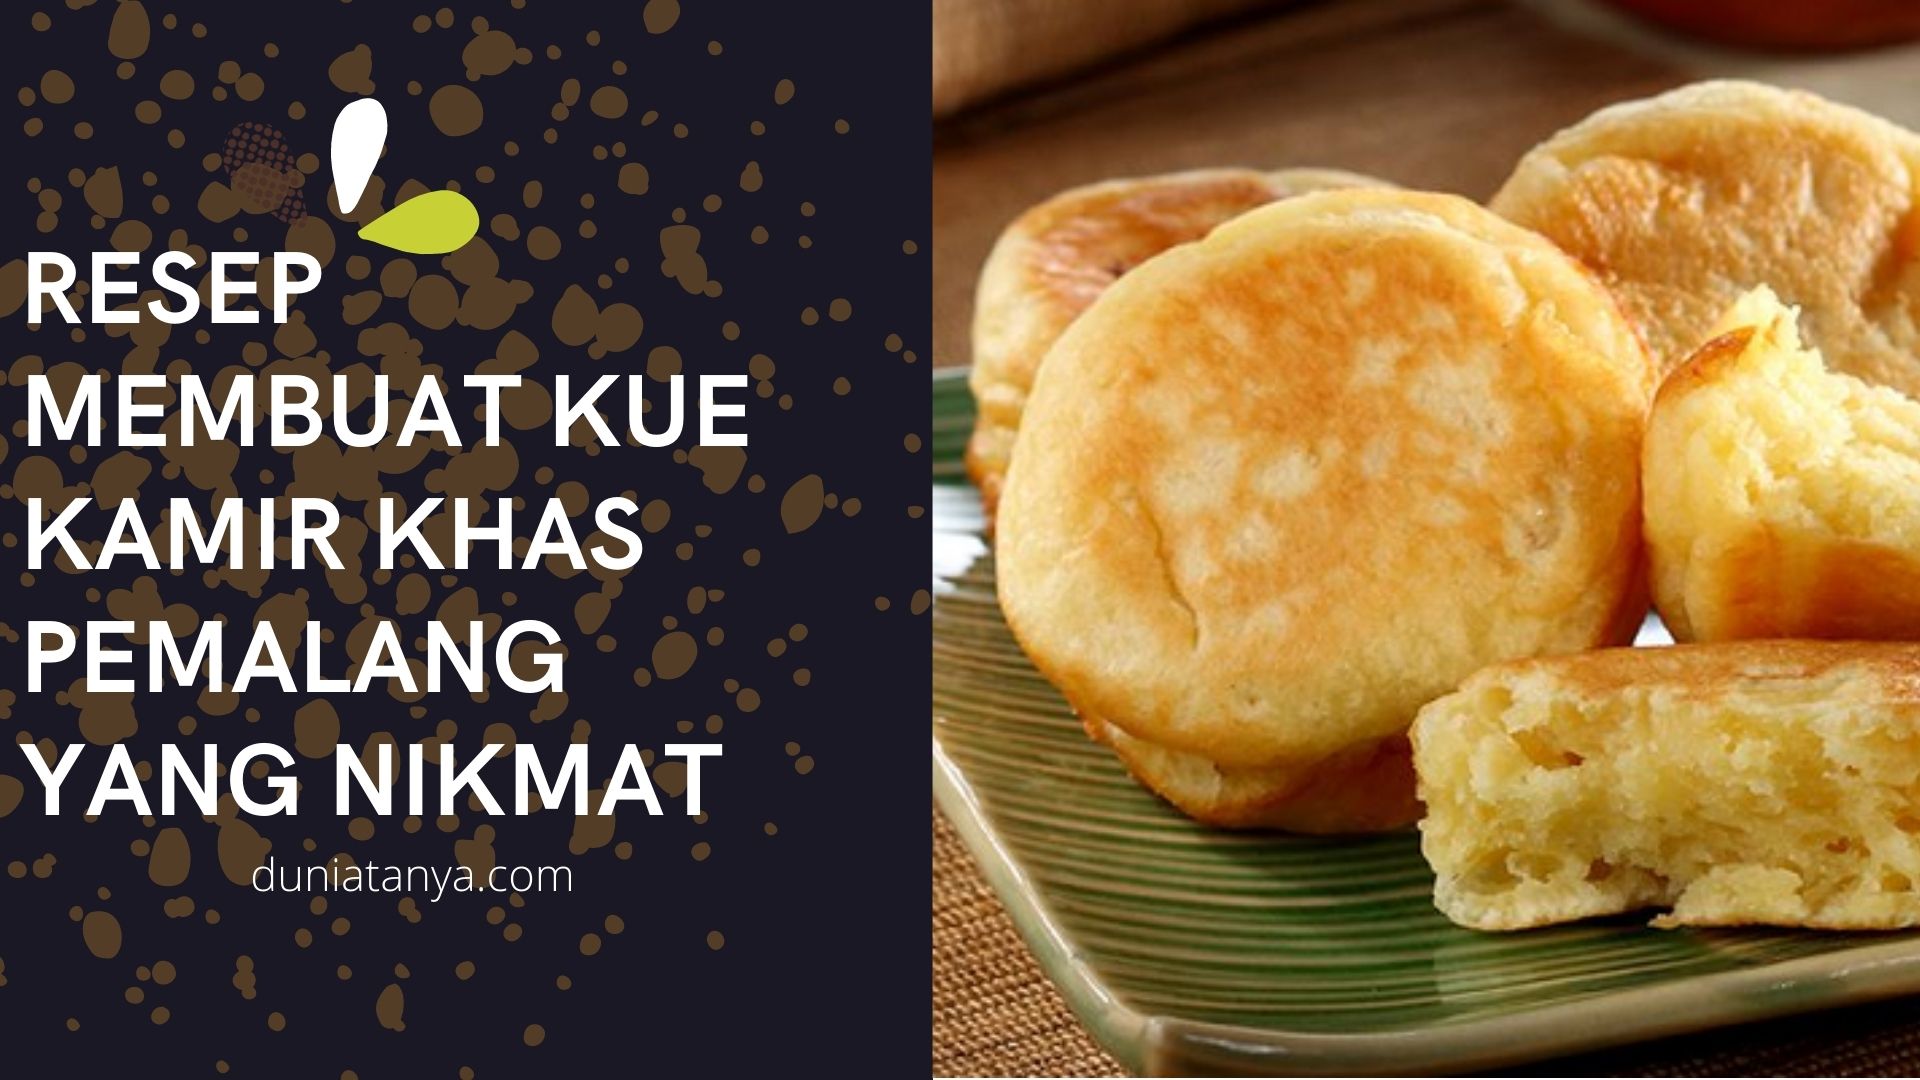 You are currently viewing Resep Membuat Kue Kamir Khas Pemalang Yang Nikmat